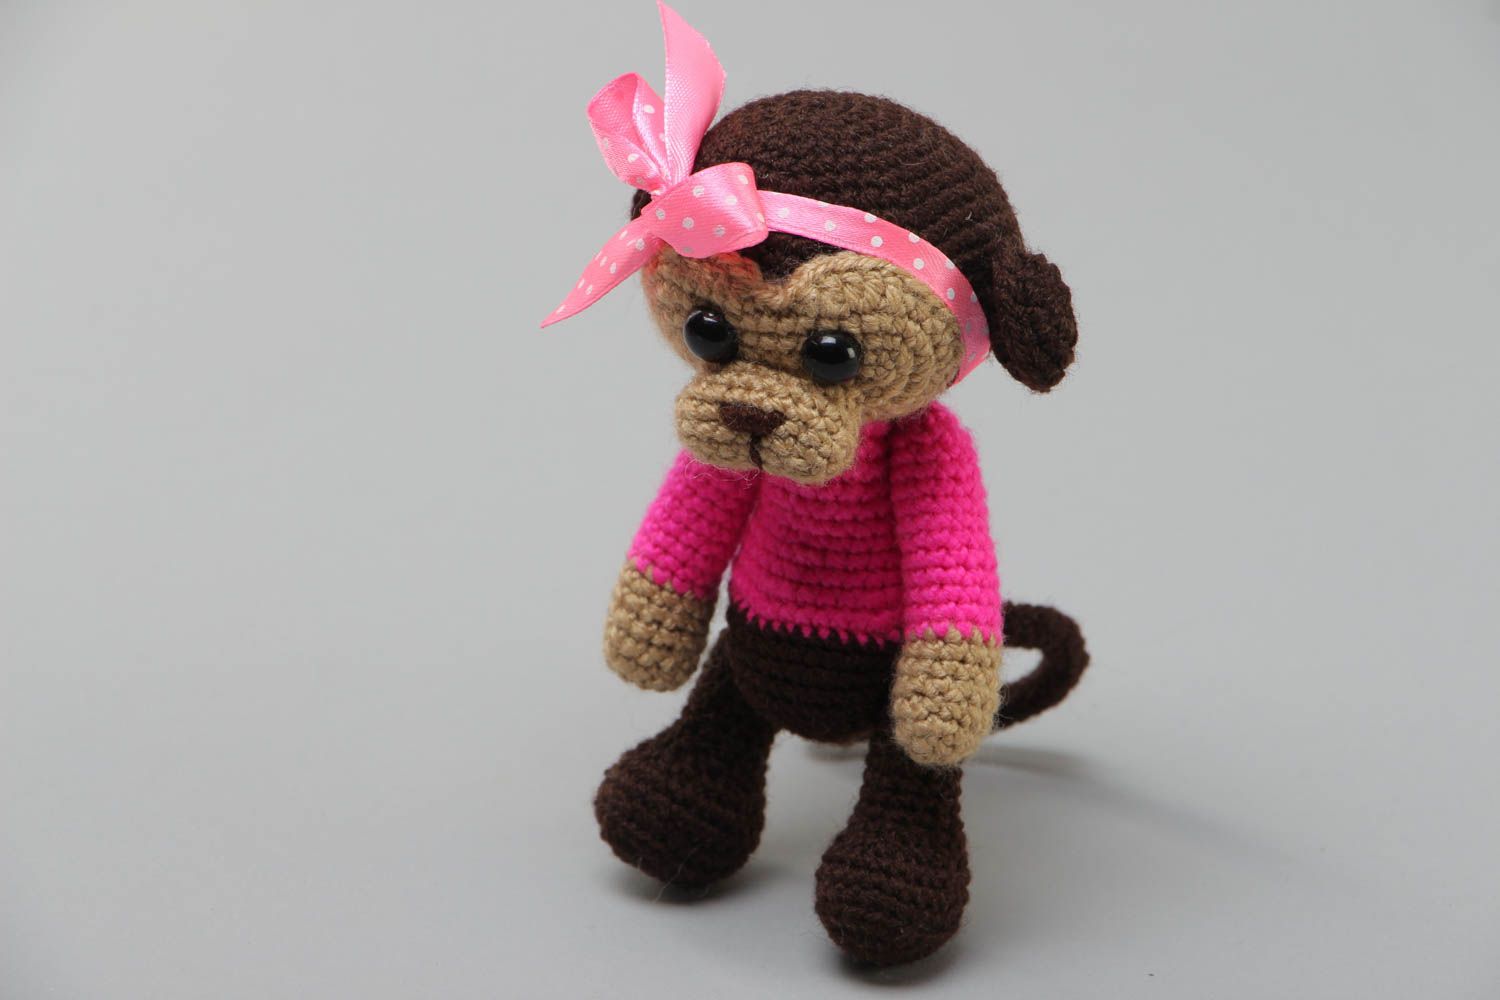 Маленькая мягкая вязаная игрушка обезьянка в розовом крючком из акрила хэнд мэйд фото 2